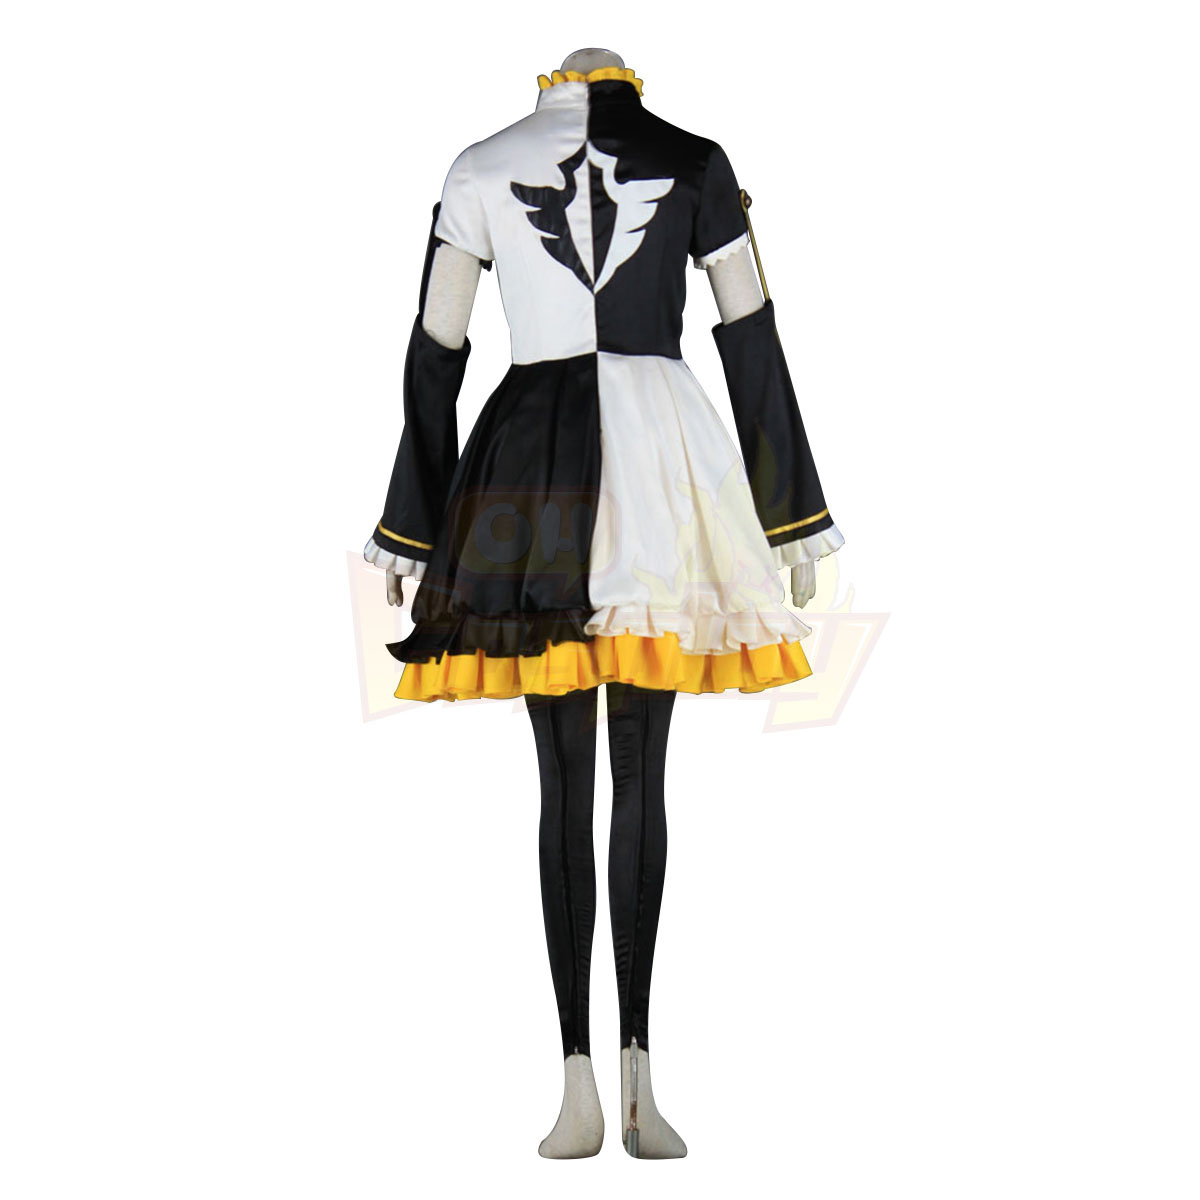 Kläder Vocaloid Kagamine Rin & Len 1 Cosplay Karneval Kläder